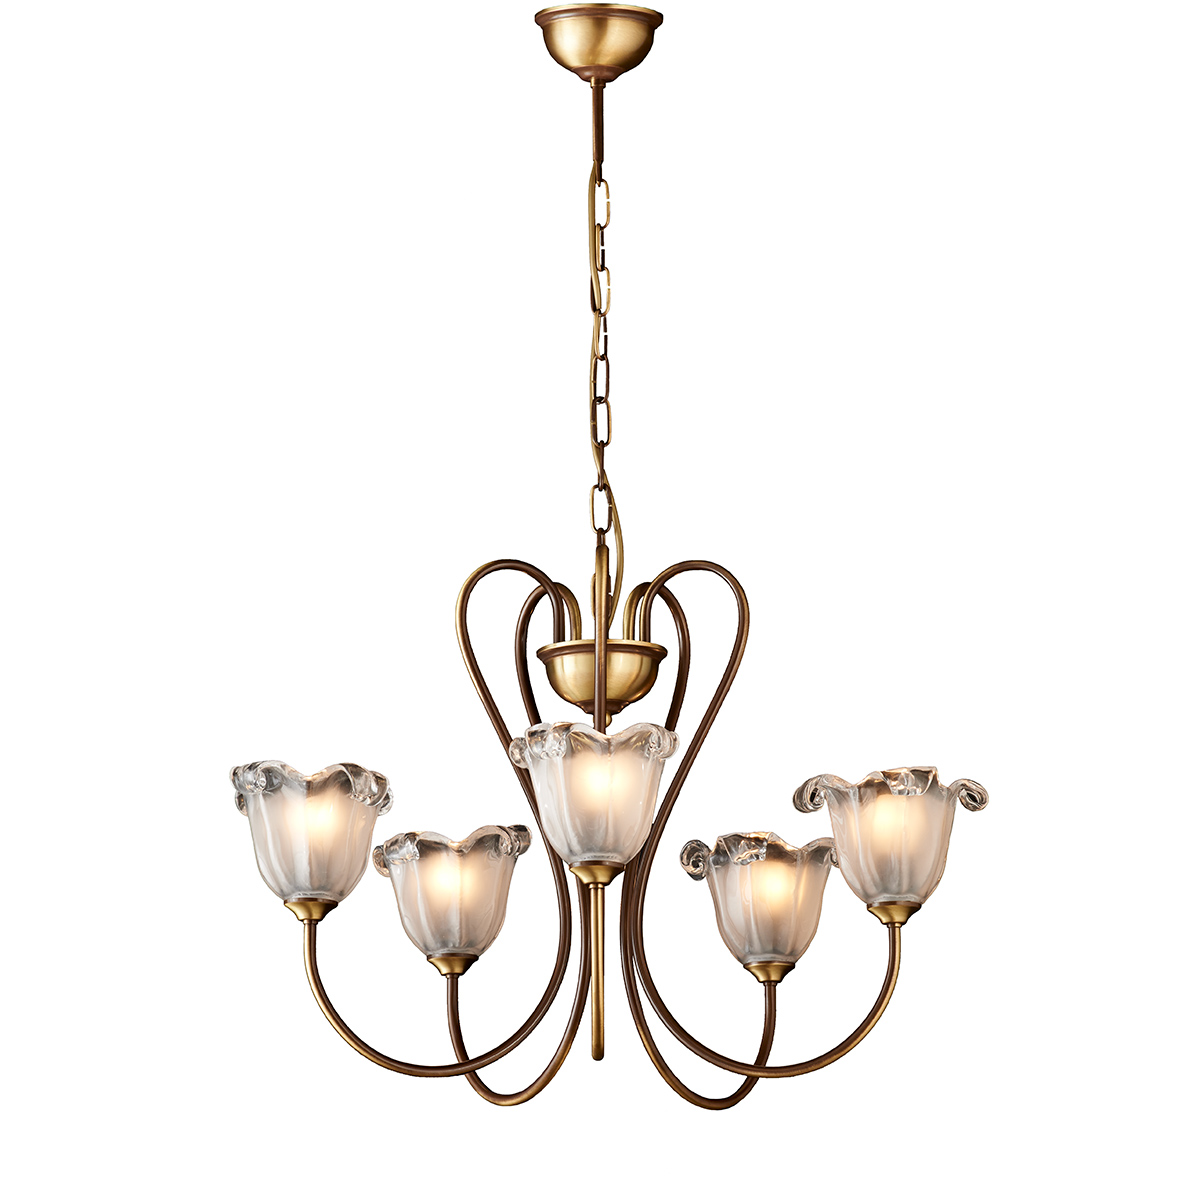 Κλασικό φωτιστικό με κρύσταλλα Μουράνο ΝΑΞΟΣ-1 5-bulb chandelier with Murano crystals